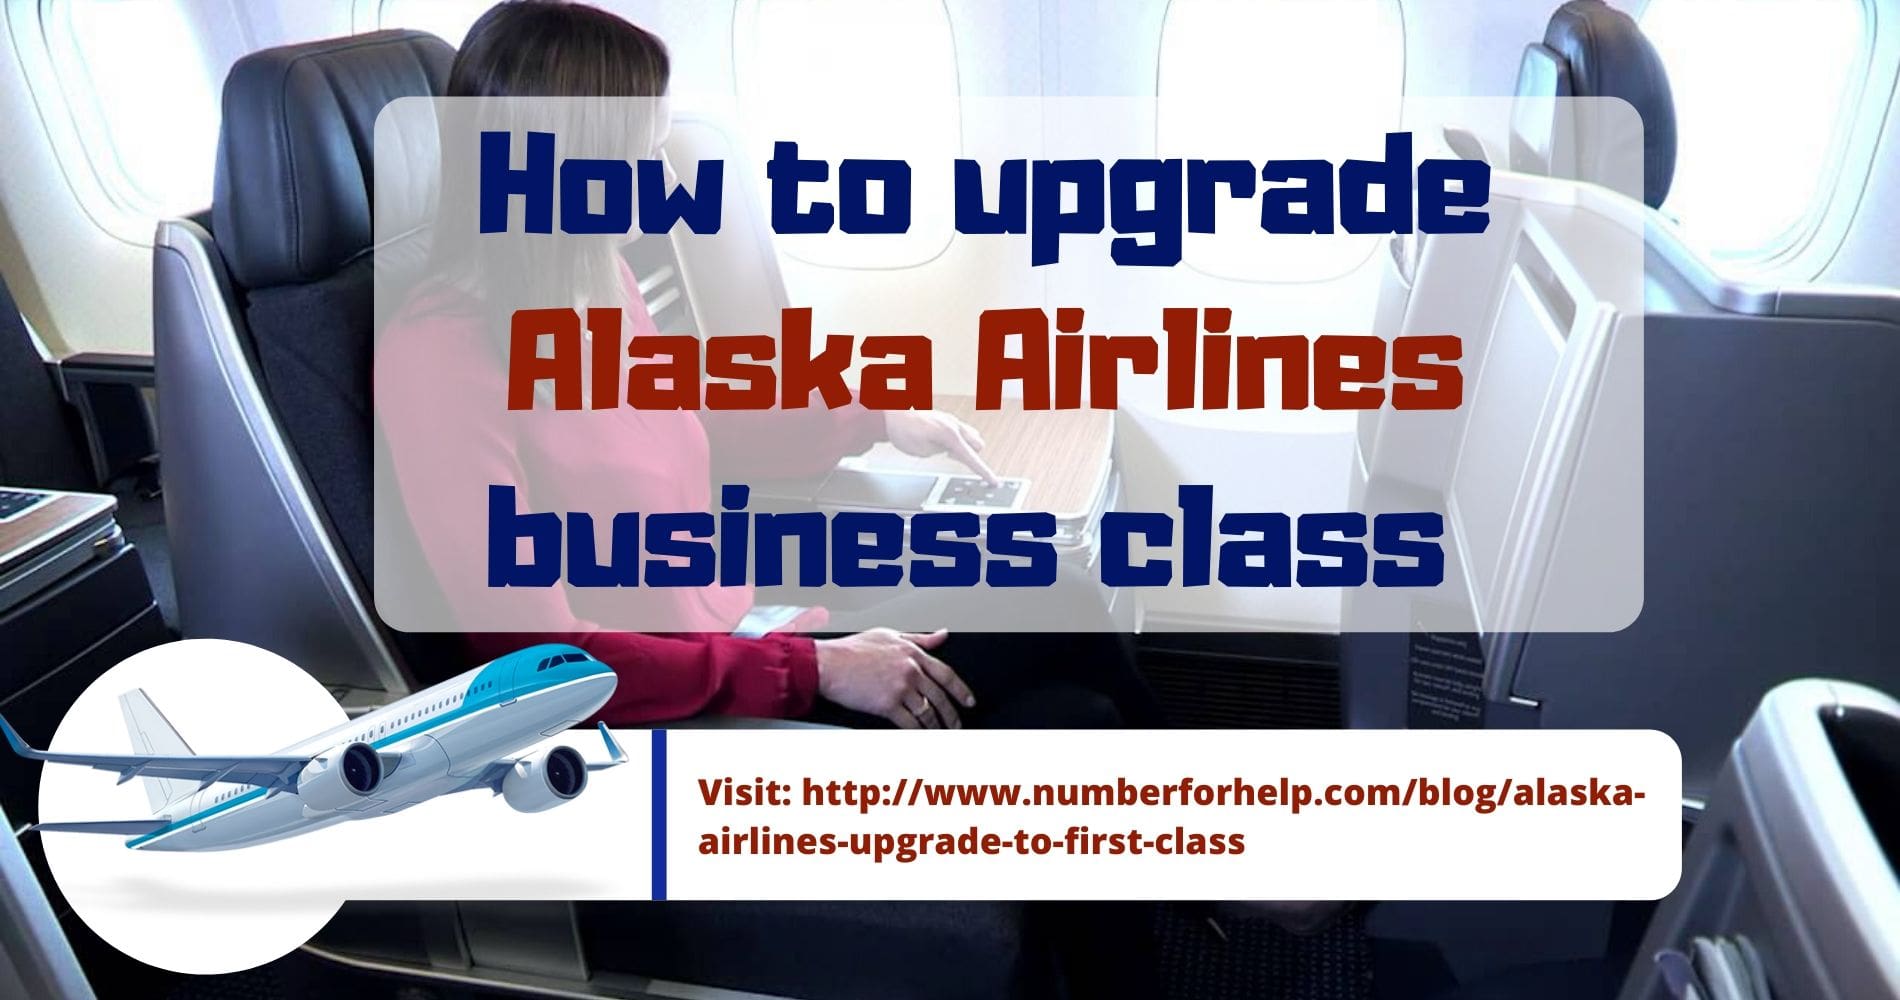 2019-12-12-12-13-15alaska airlines business class upgrade-min